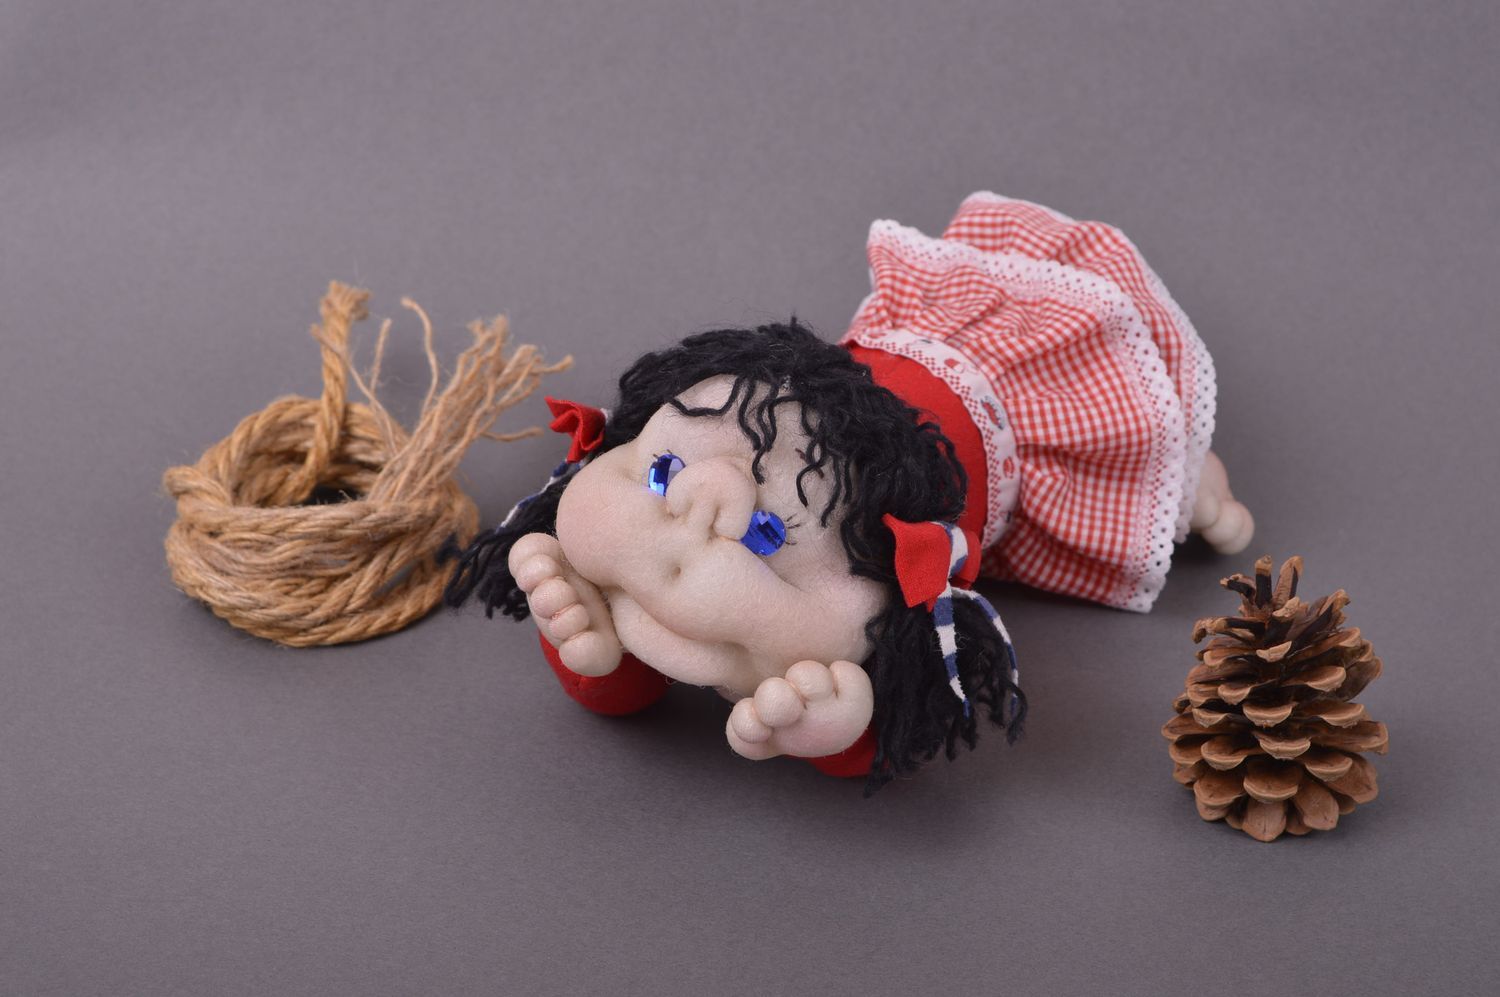 Игрушка ручной работы оригинальная игрушка кукла красивый интересный подарок фото 1